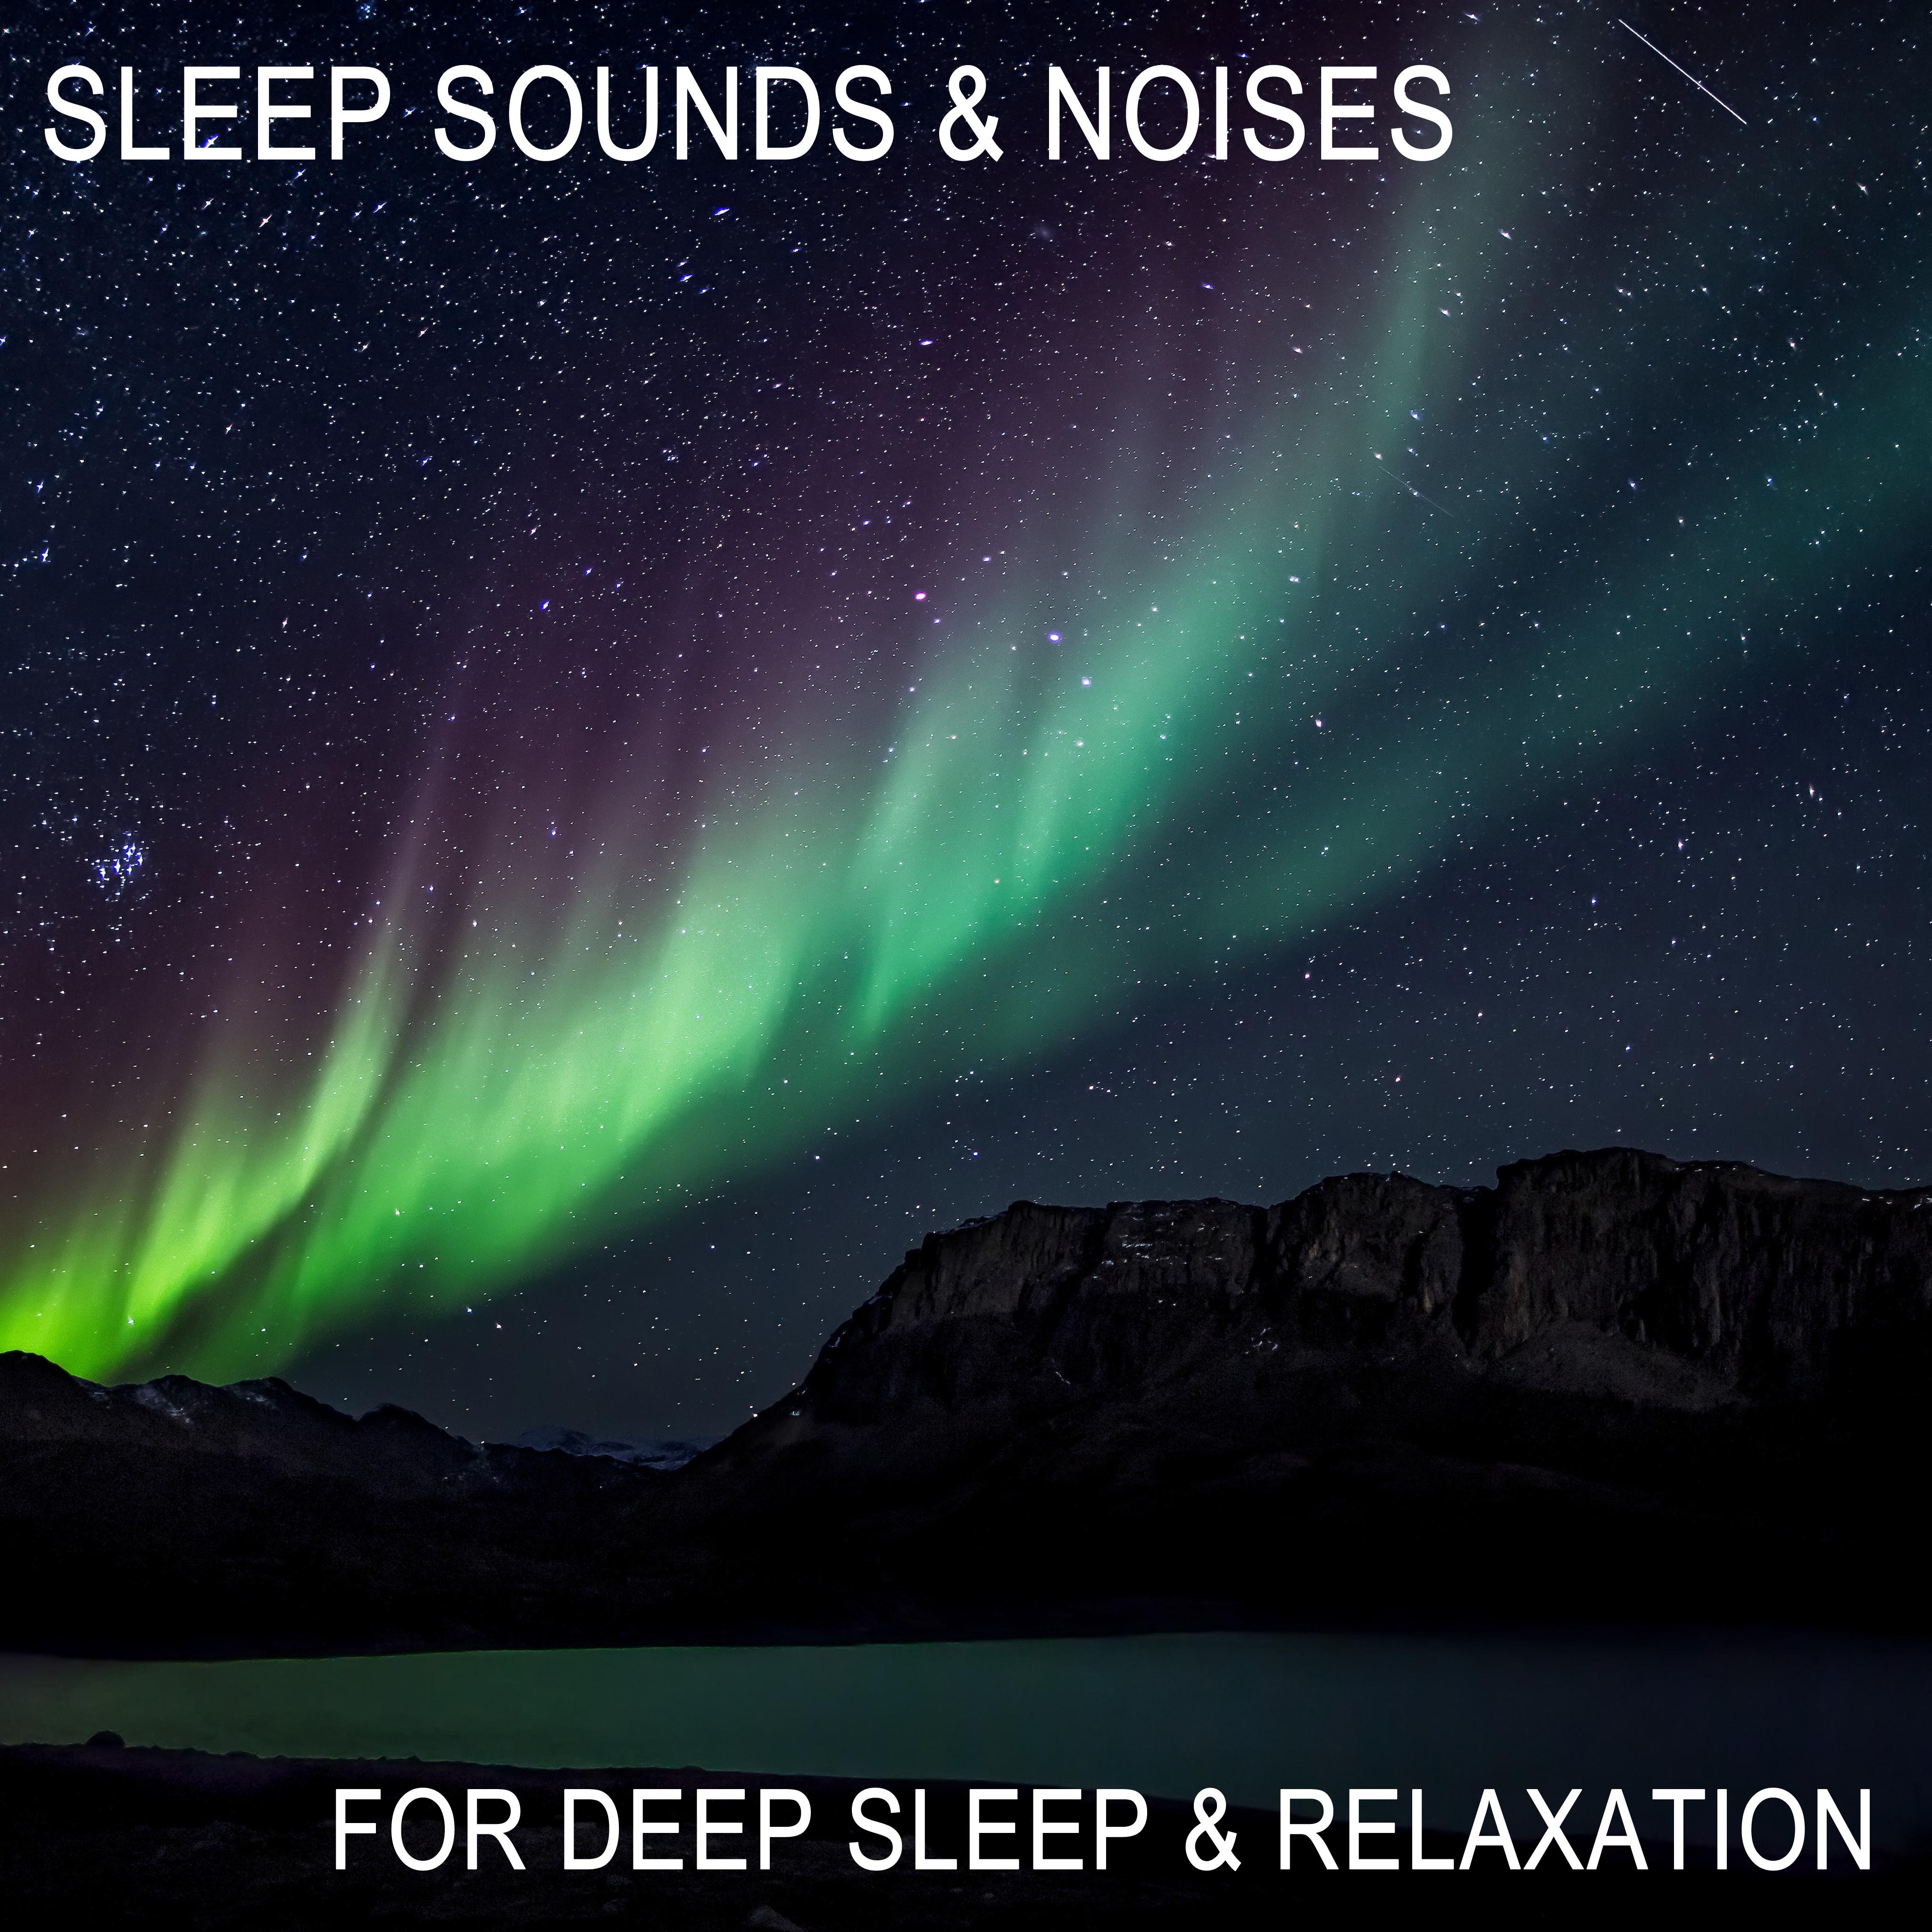 15 Sleep Sounds & Noises for Deep Sleep & Relaxation